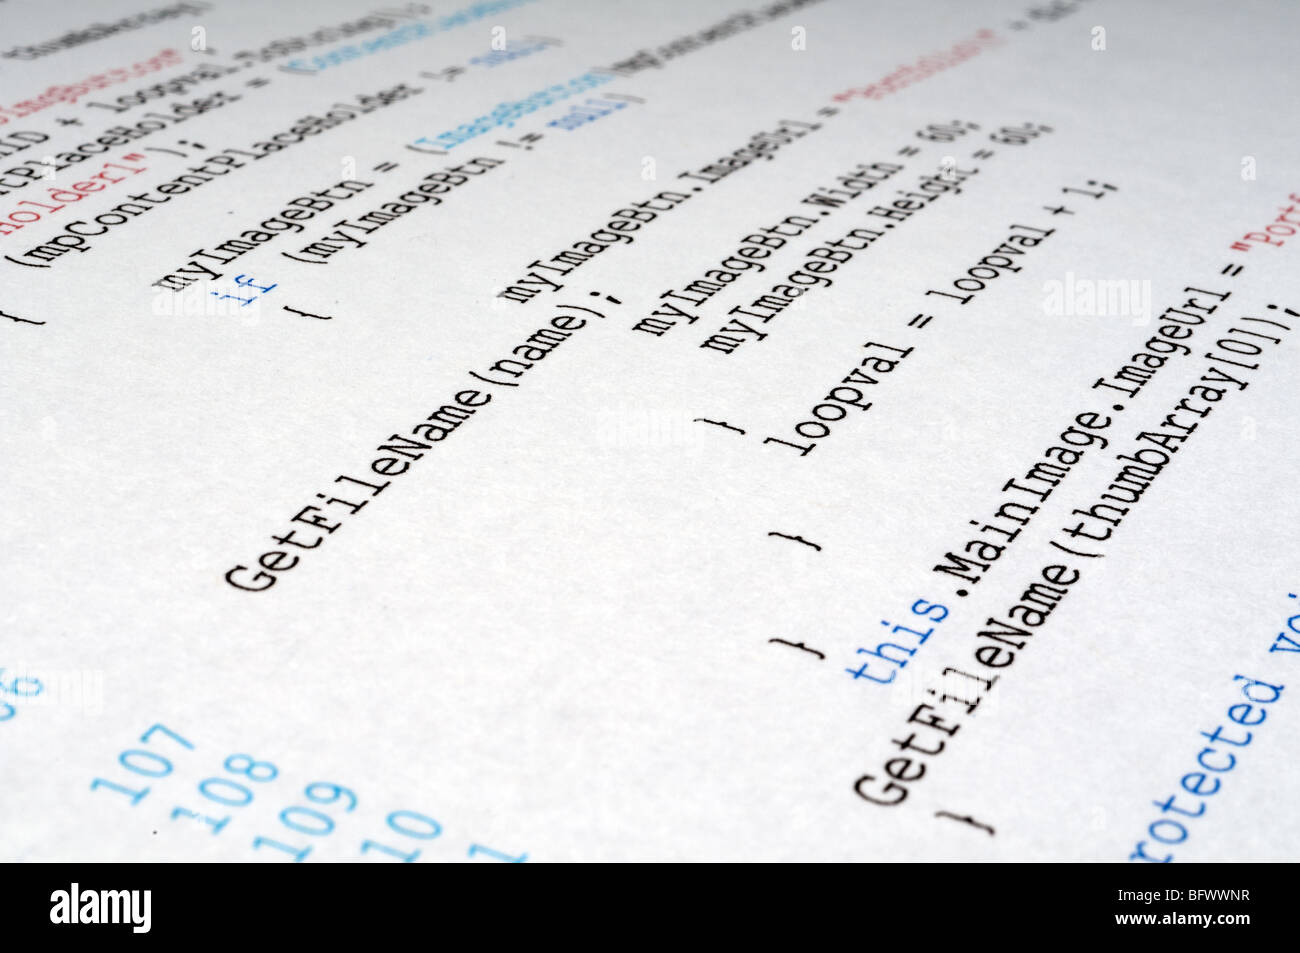 Una copia impresa de C# el código de programación informática idioma Foto de stock